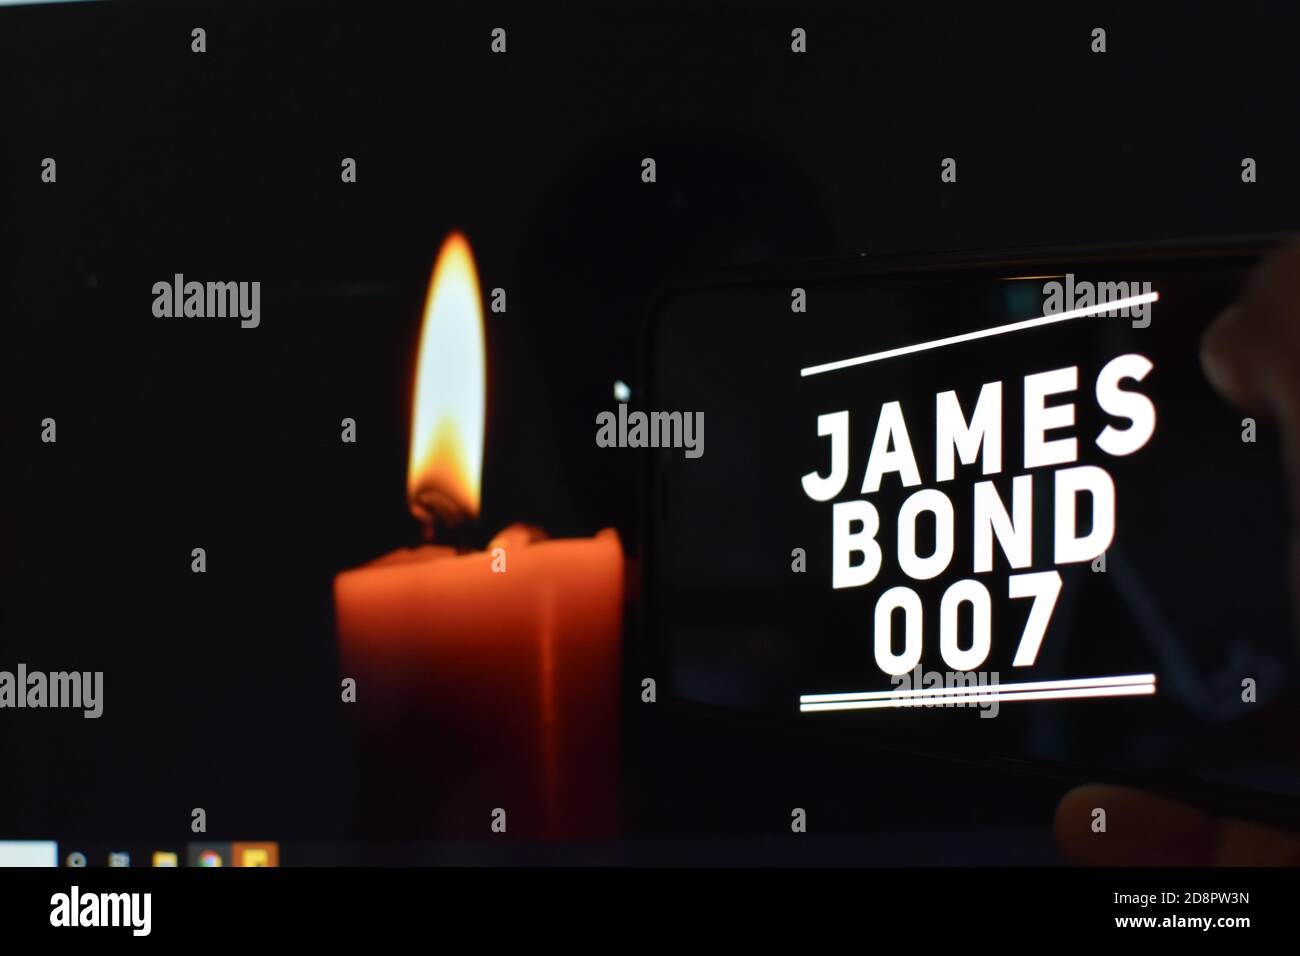 007 texte sur téléphone portable avec fond de bougie, james bond Banque D'Images